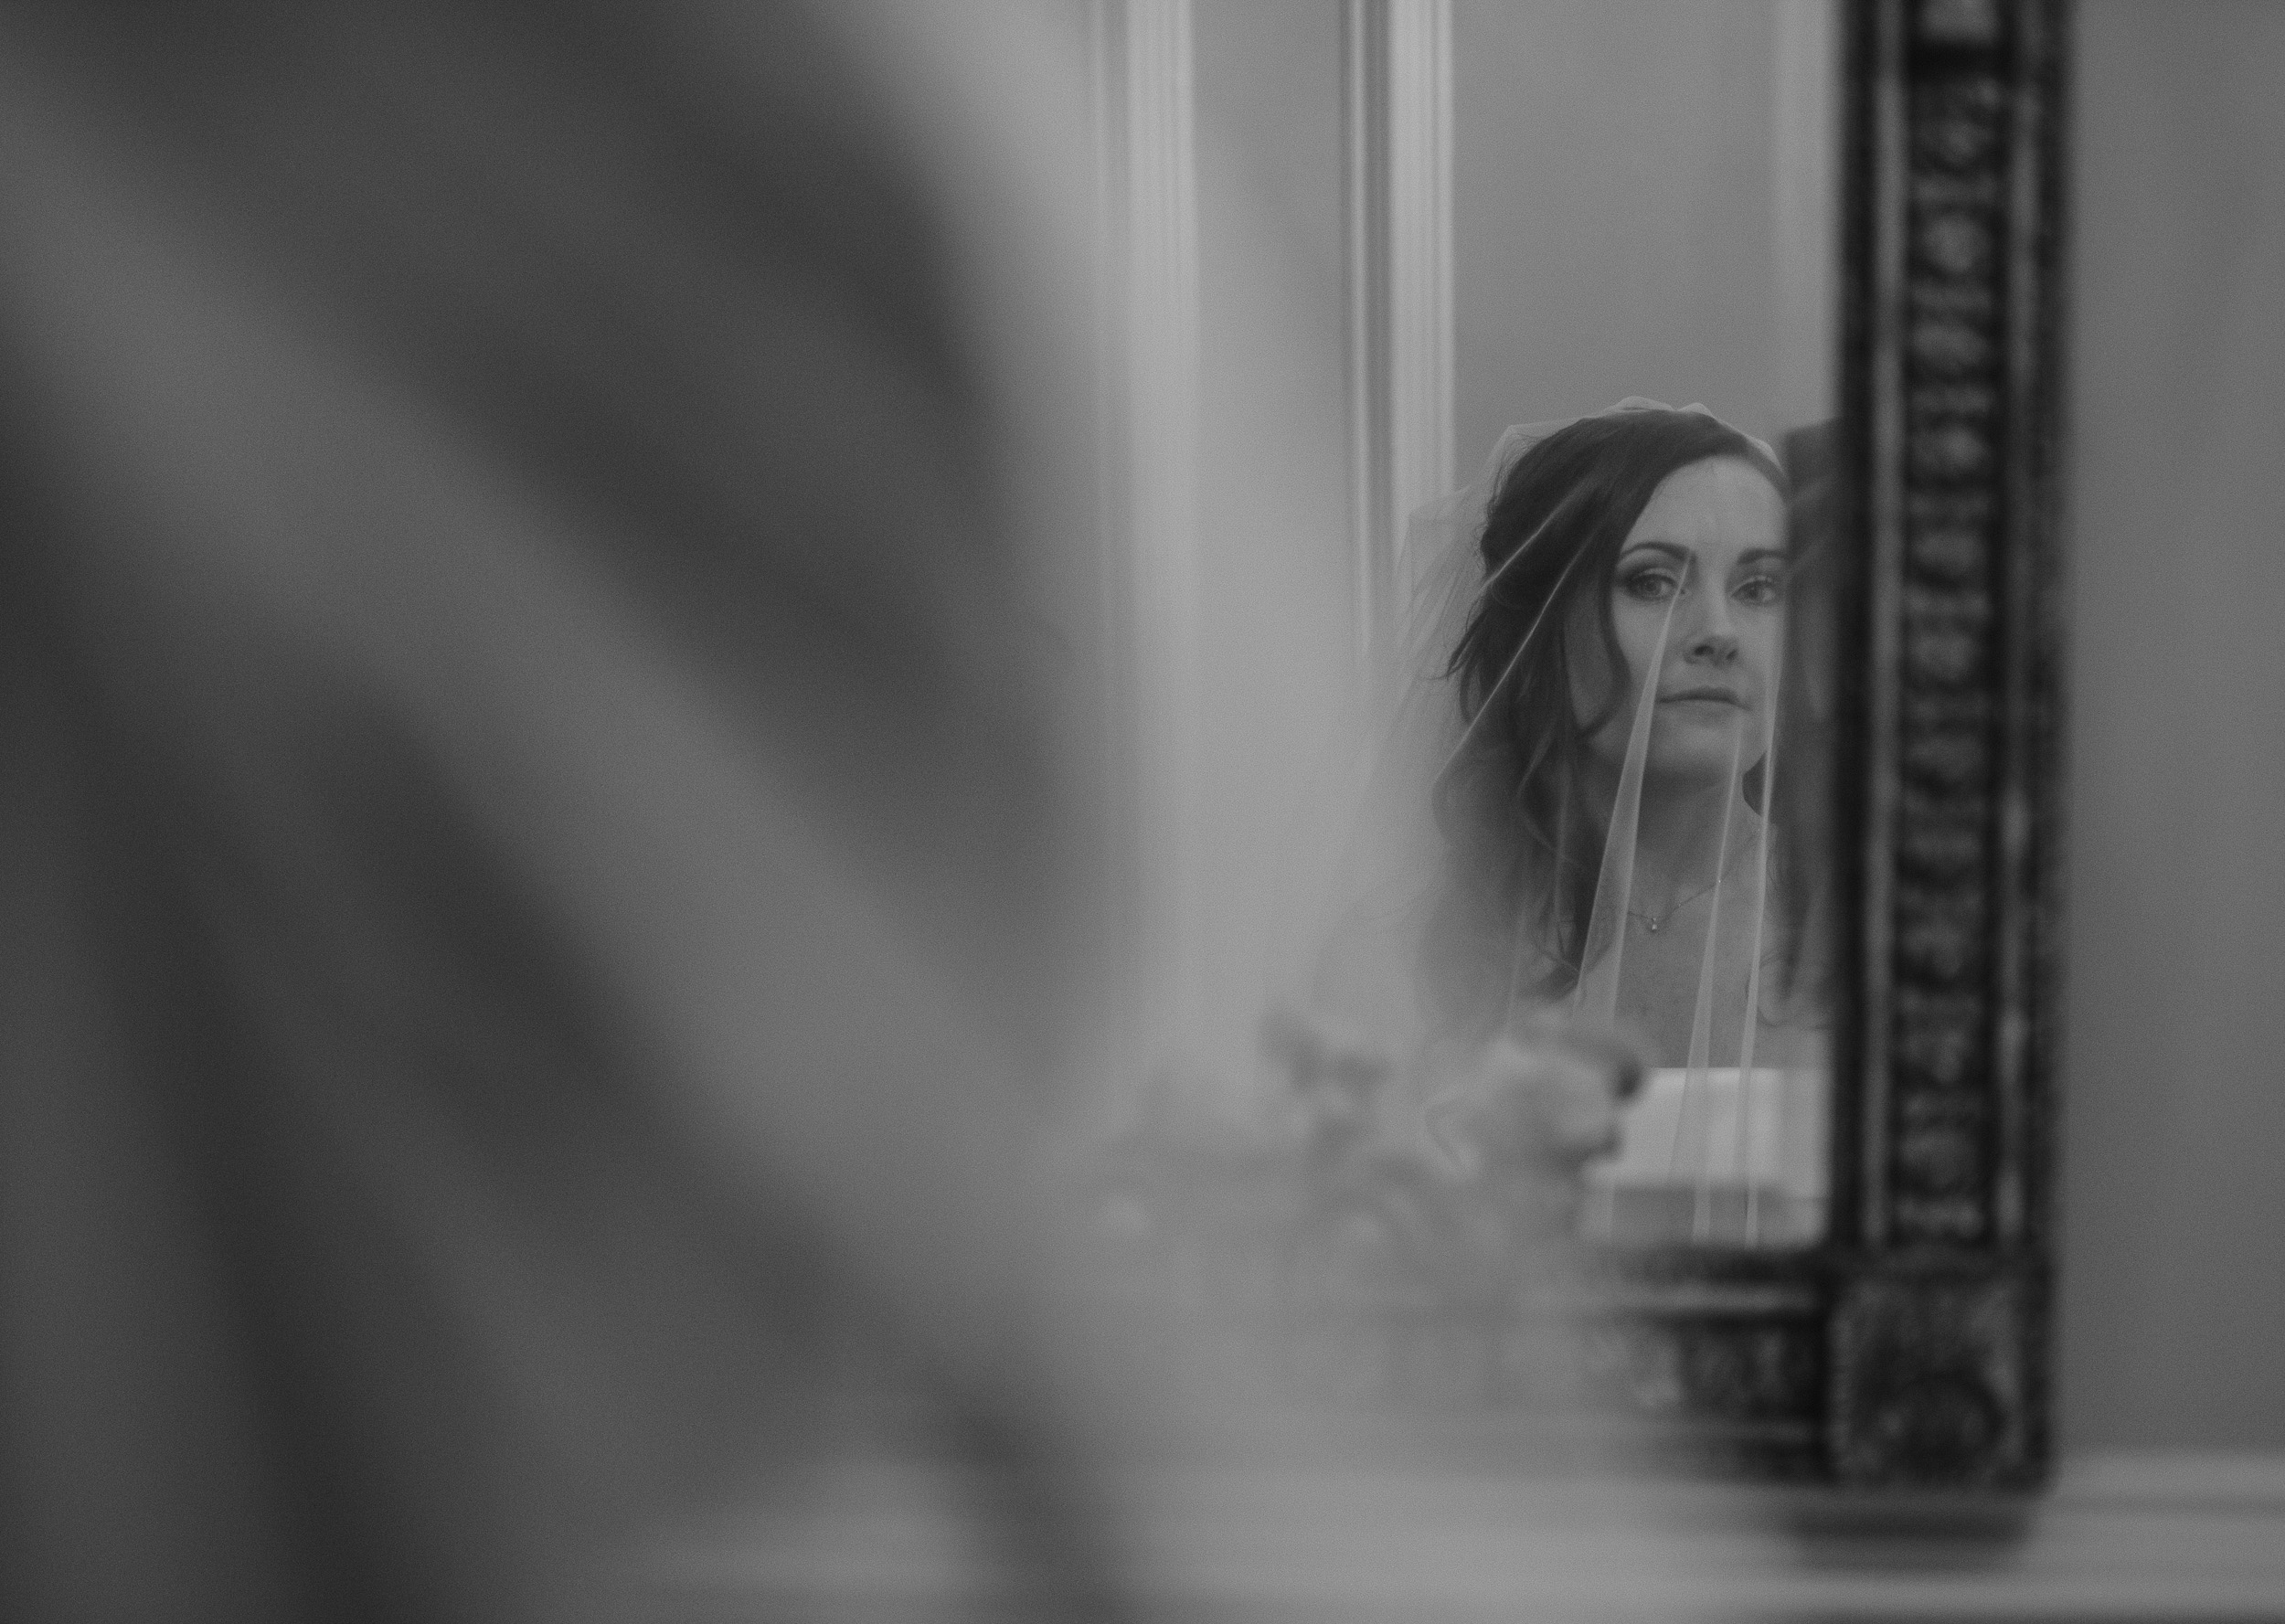 Bride looking into the mirror